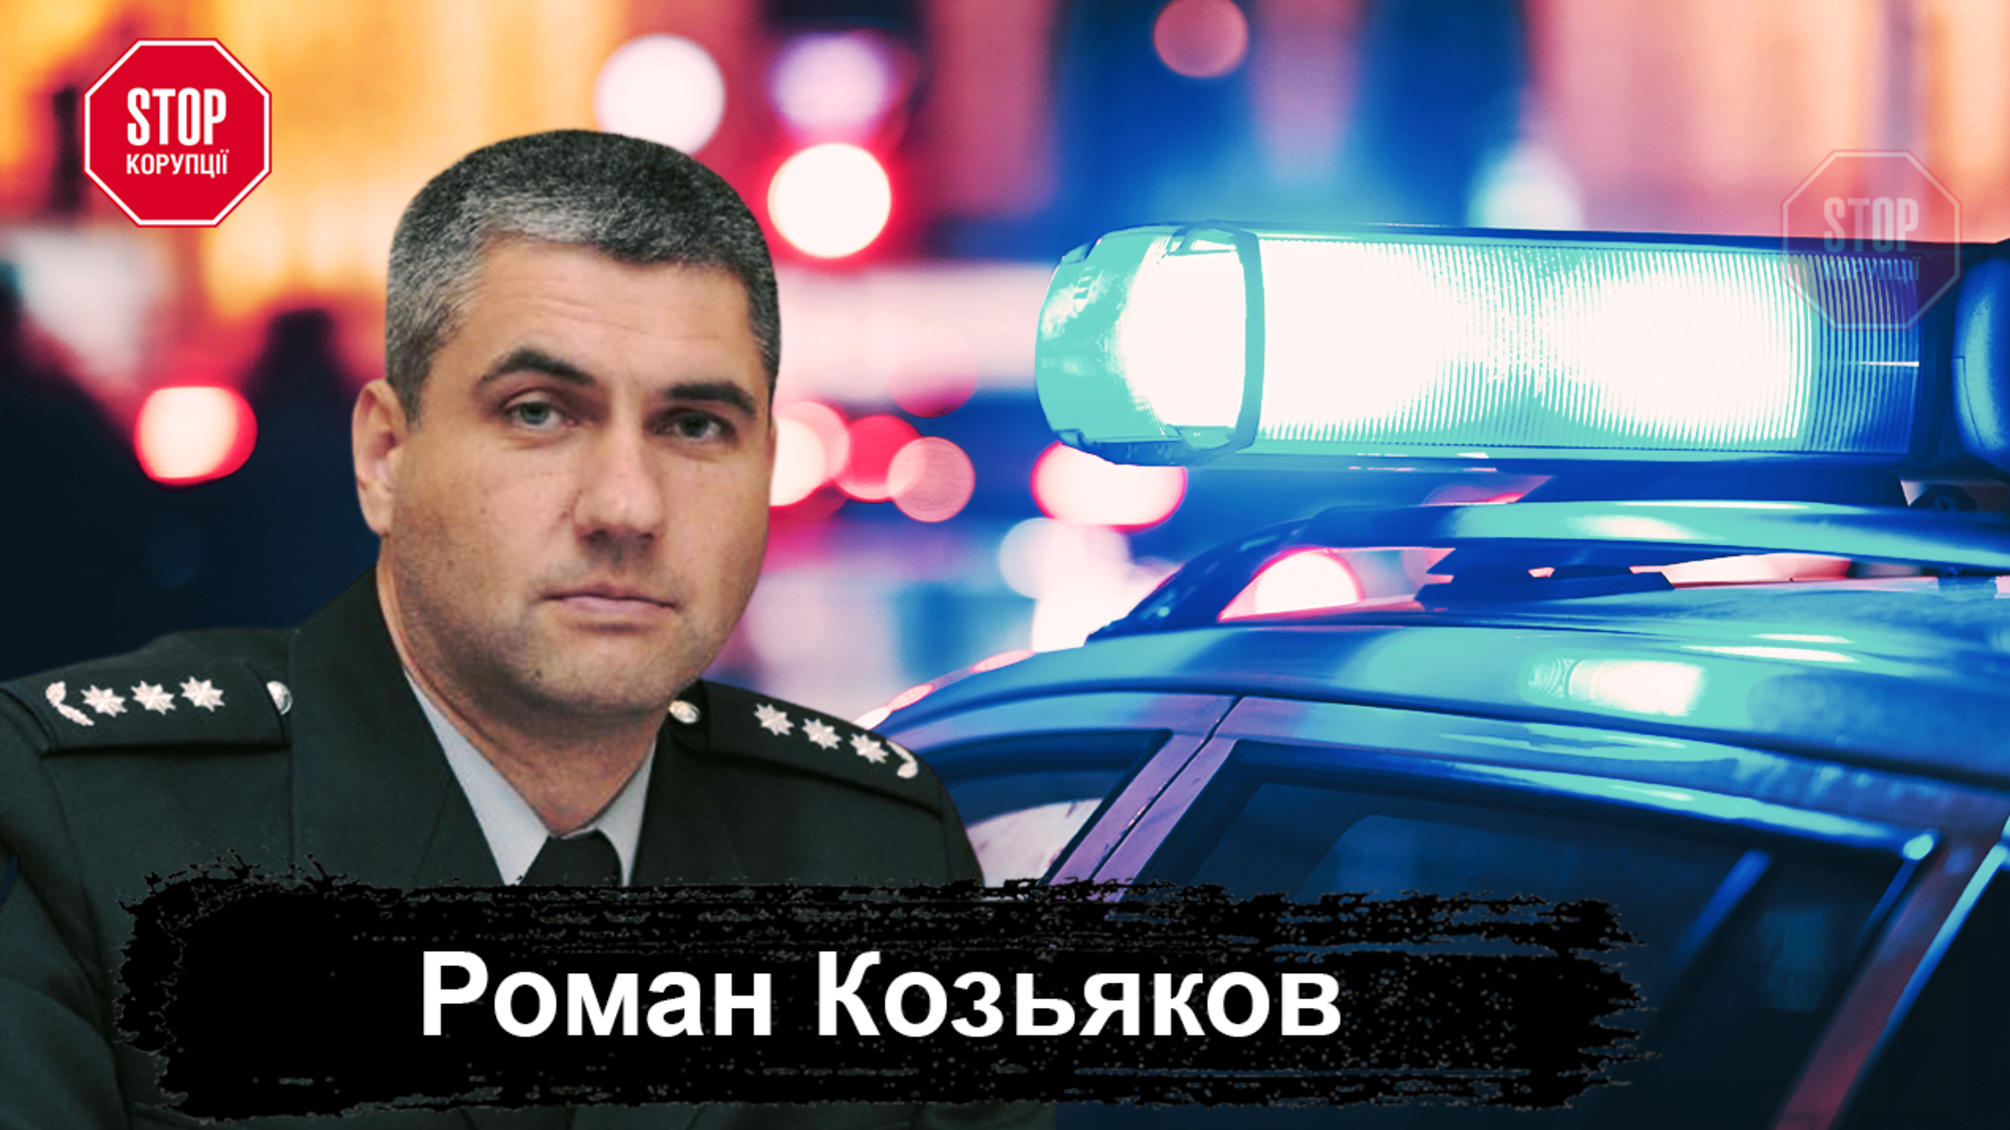 Кількість злочинів зменшилася на 14%: Роман Козьяков розповів про новації в роботі поліції Кіровоградщини